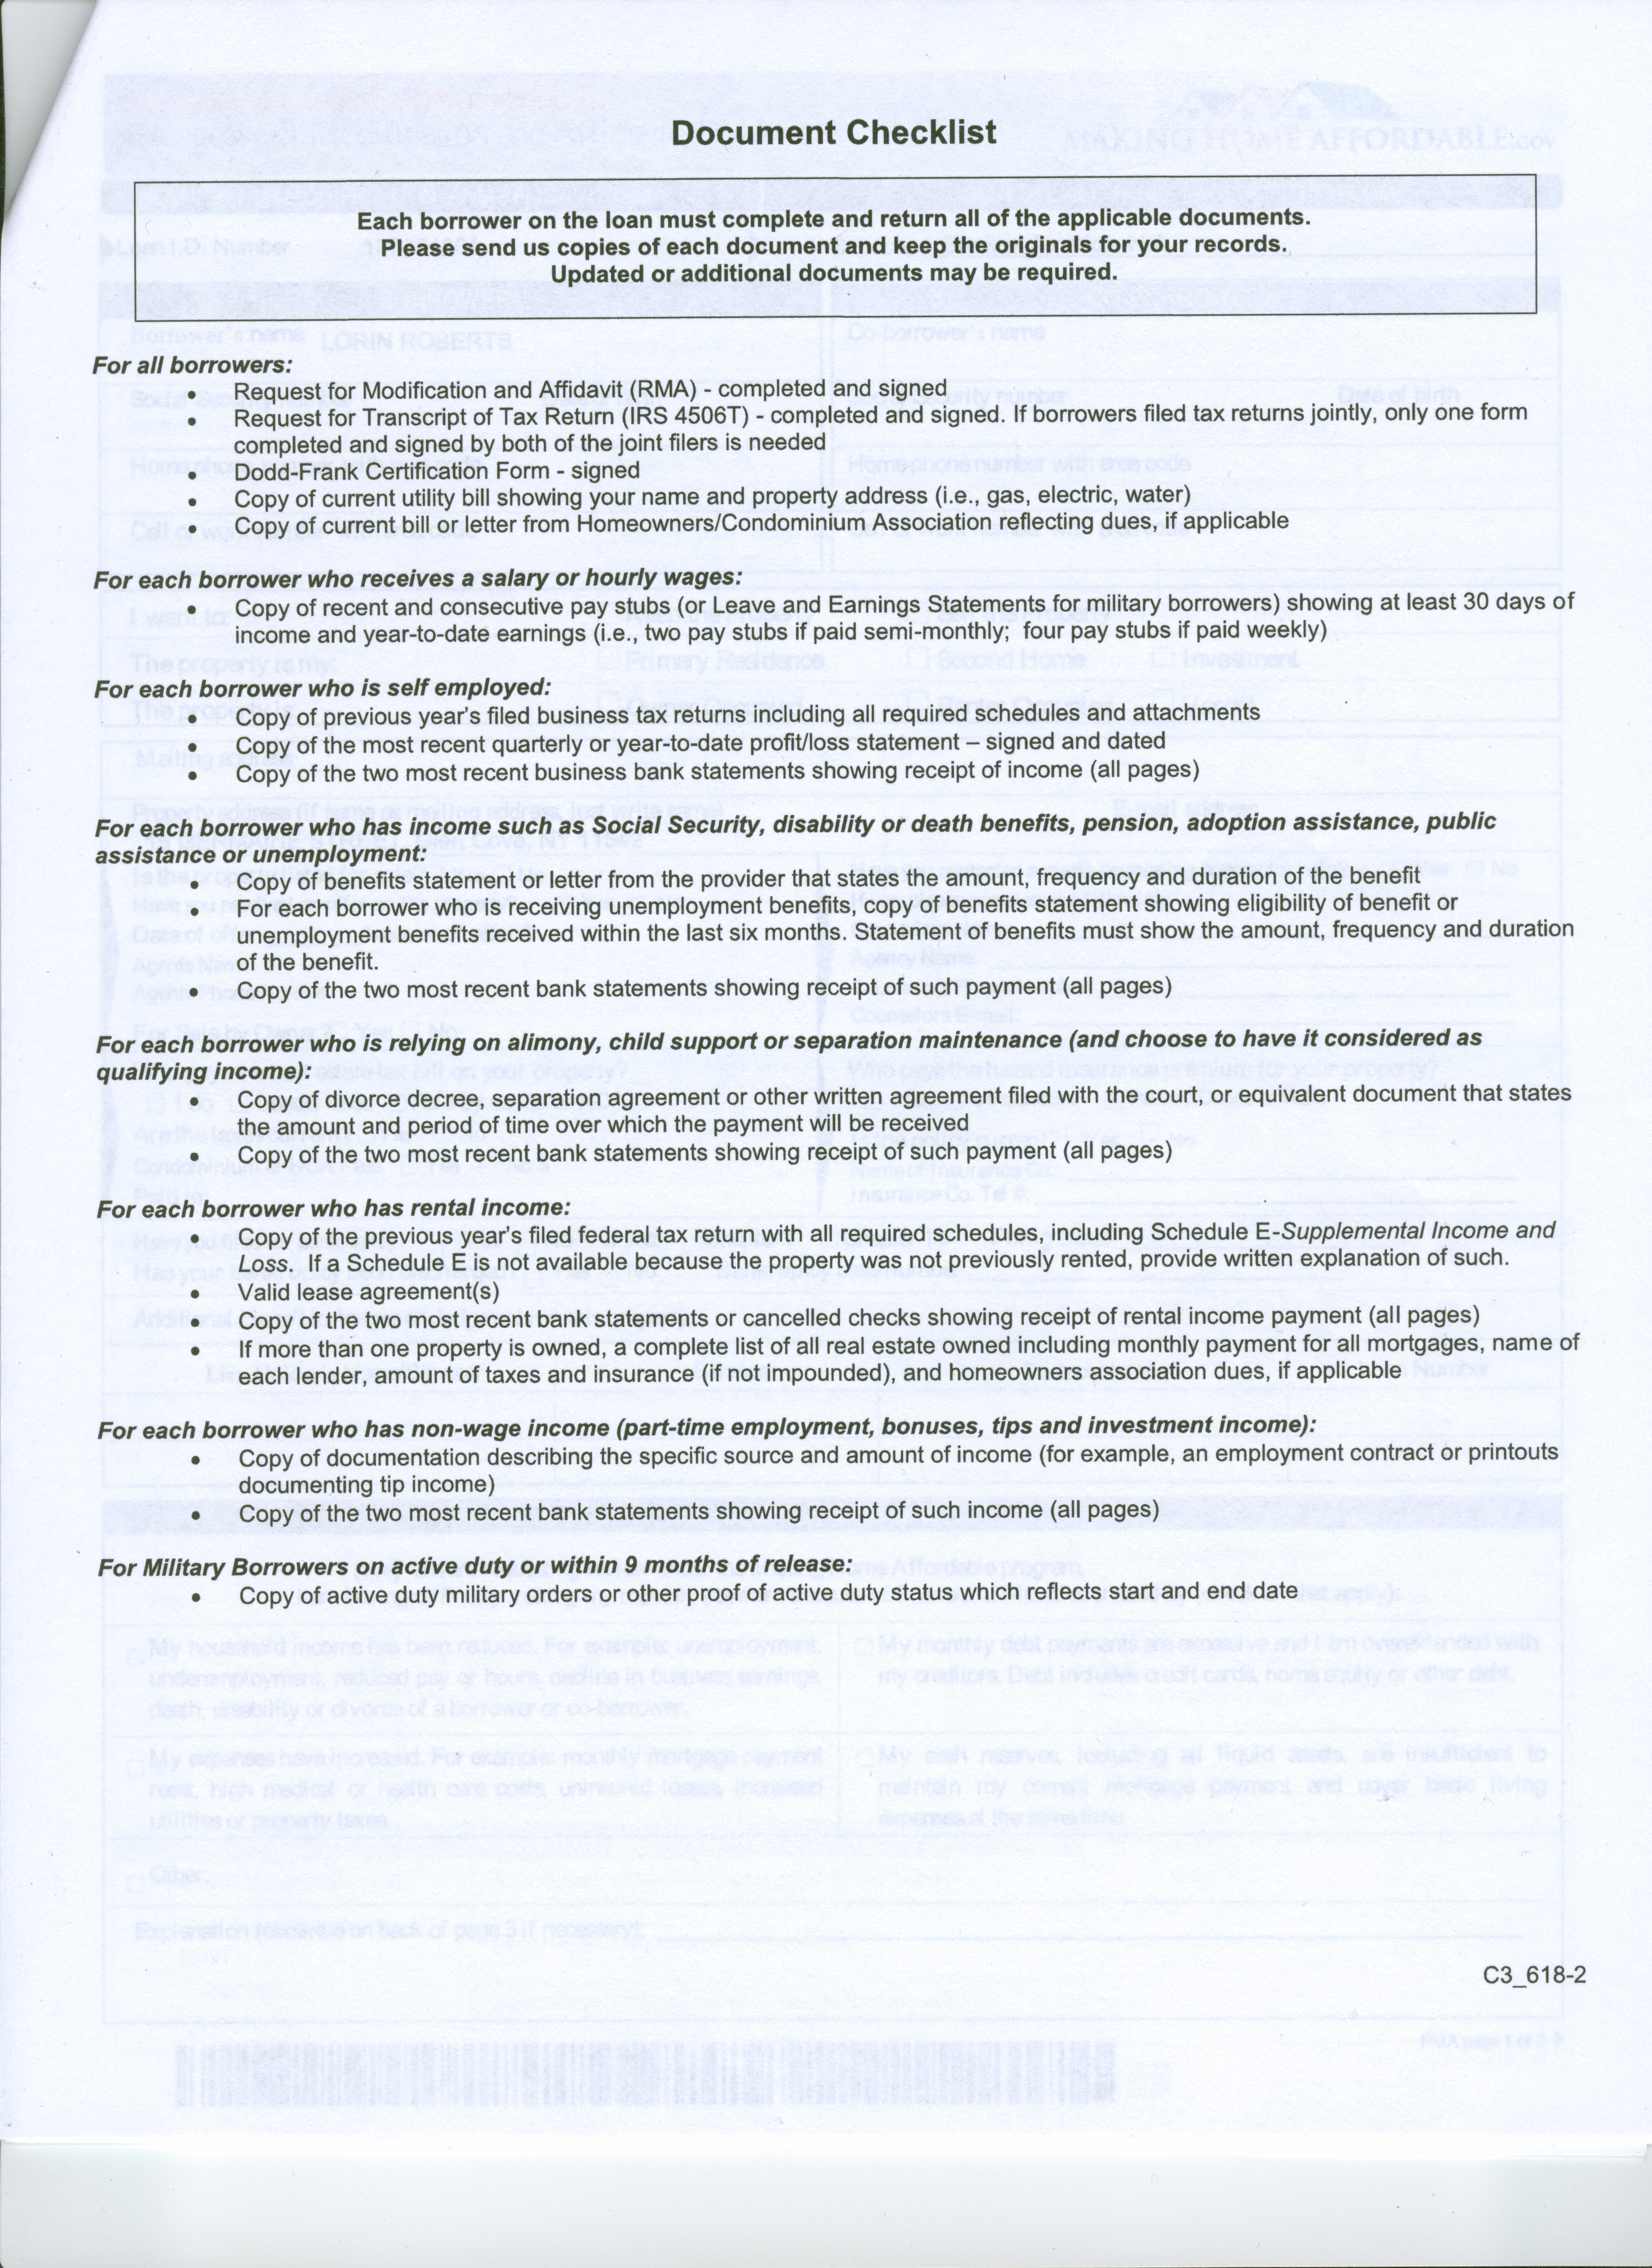 BOA Checklist Document